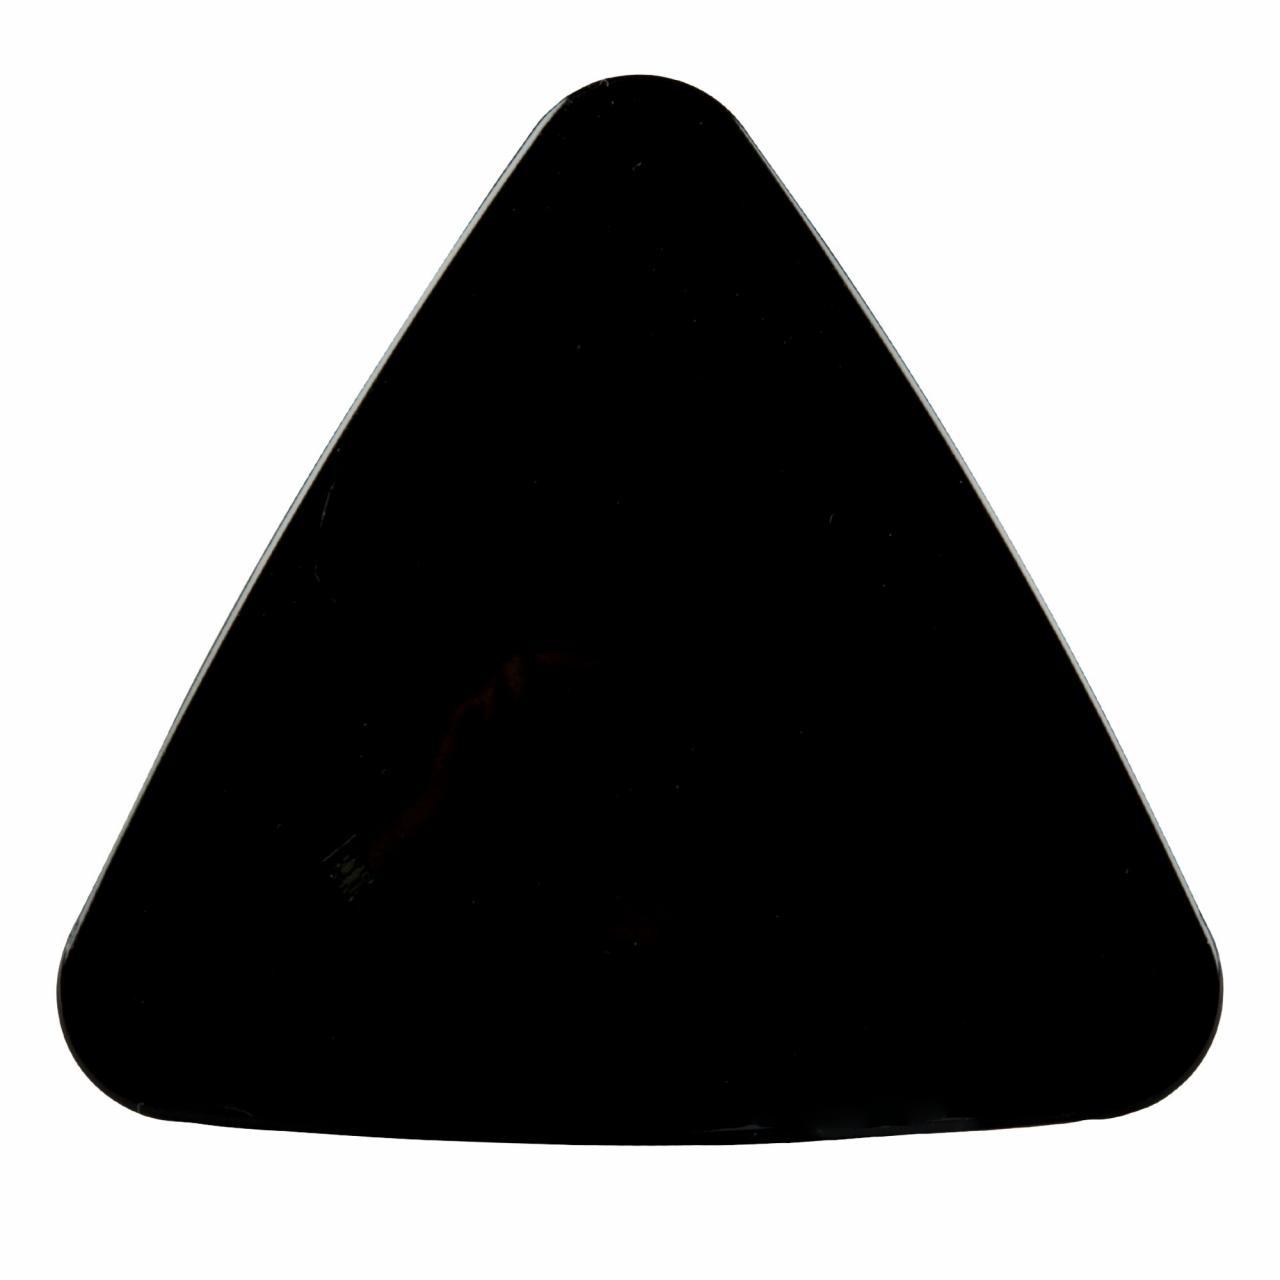 Светильник-ночник Uniel DTL-320 Треугольник/Black/Sensor UL-00007224 в #REGION_NAME_DECLINE_PP#